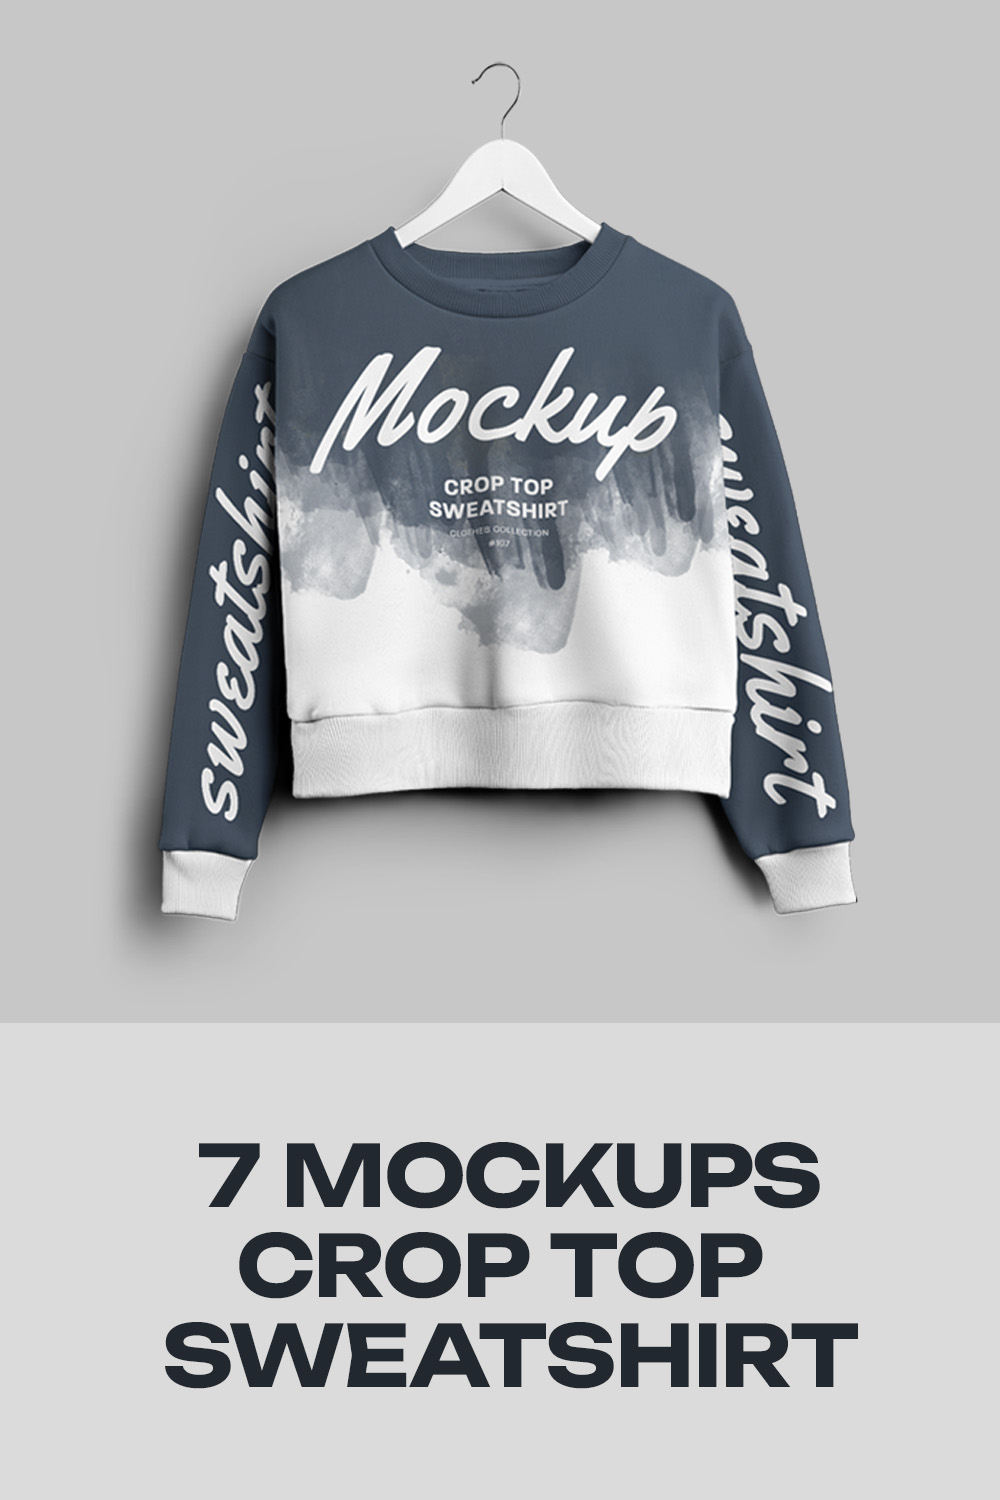 6 Mockups Crop Top Woman Sweatshirt pinterest preview image.